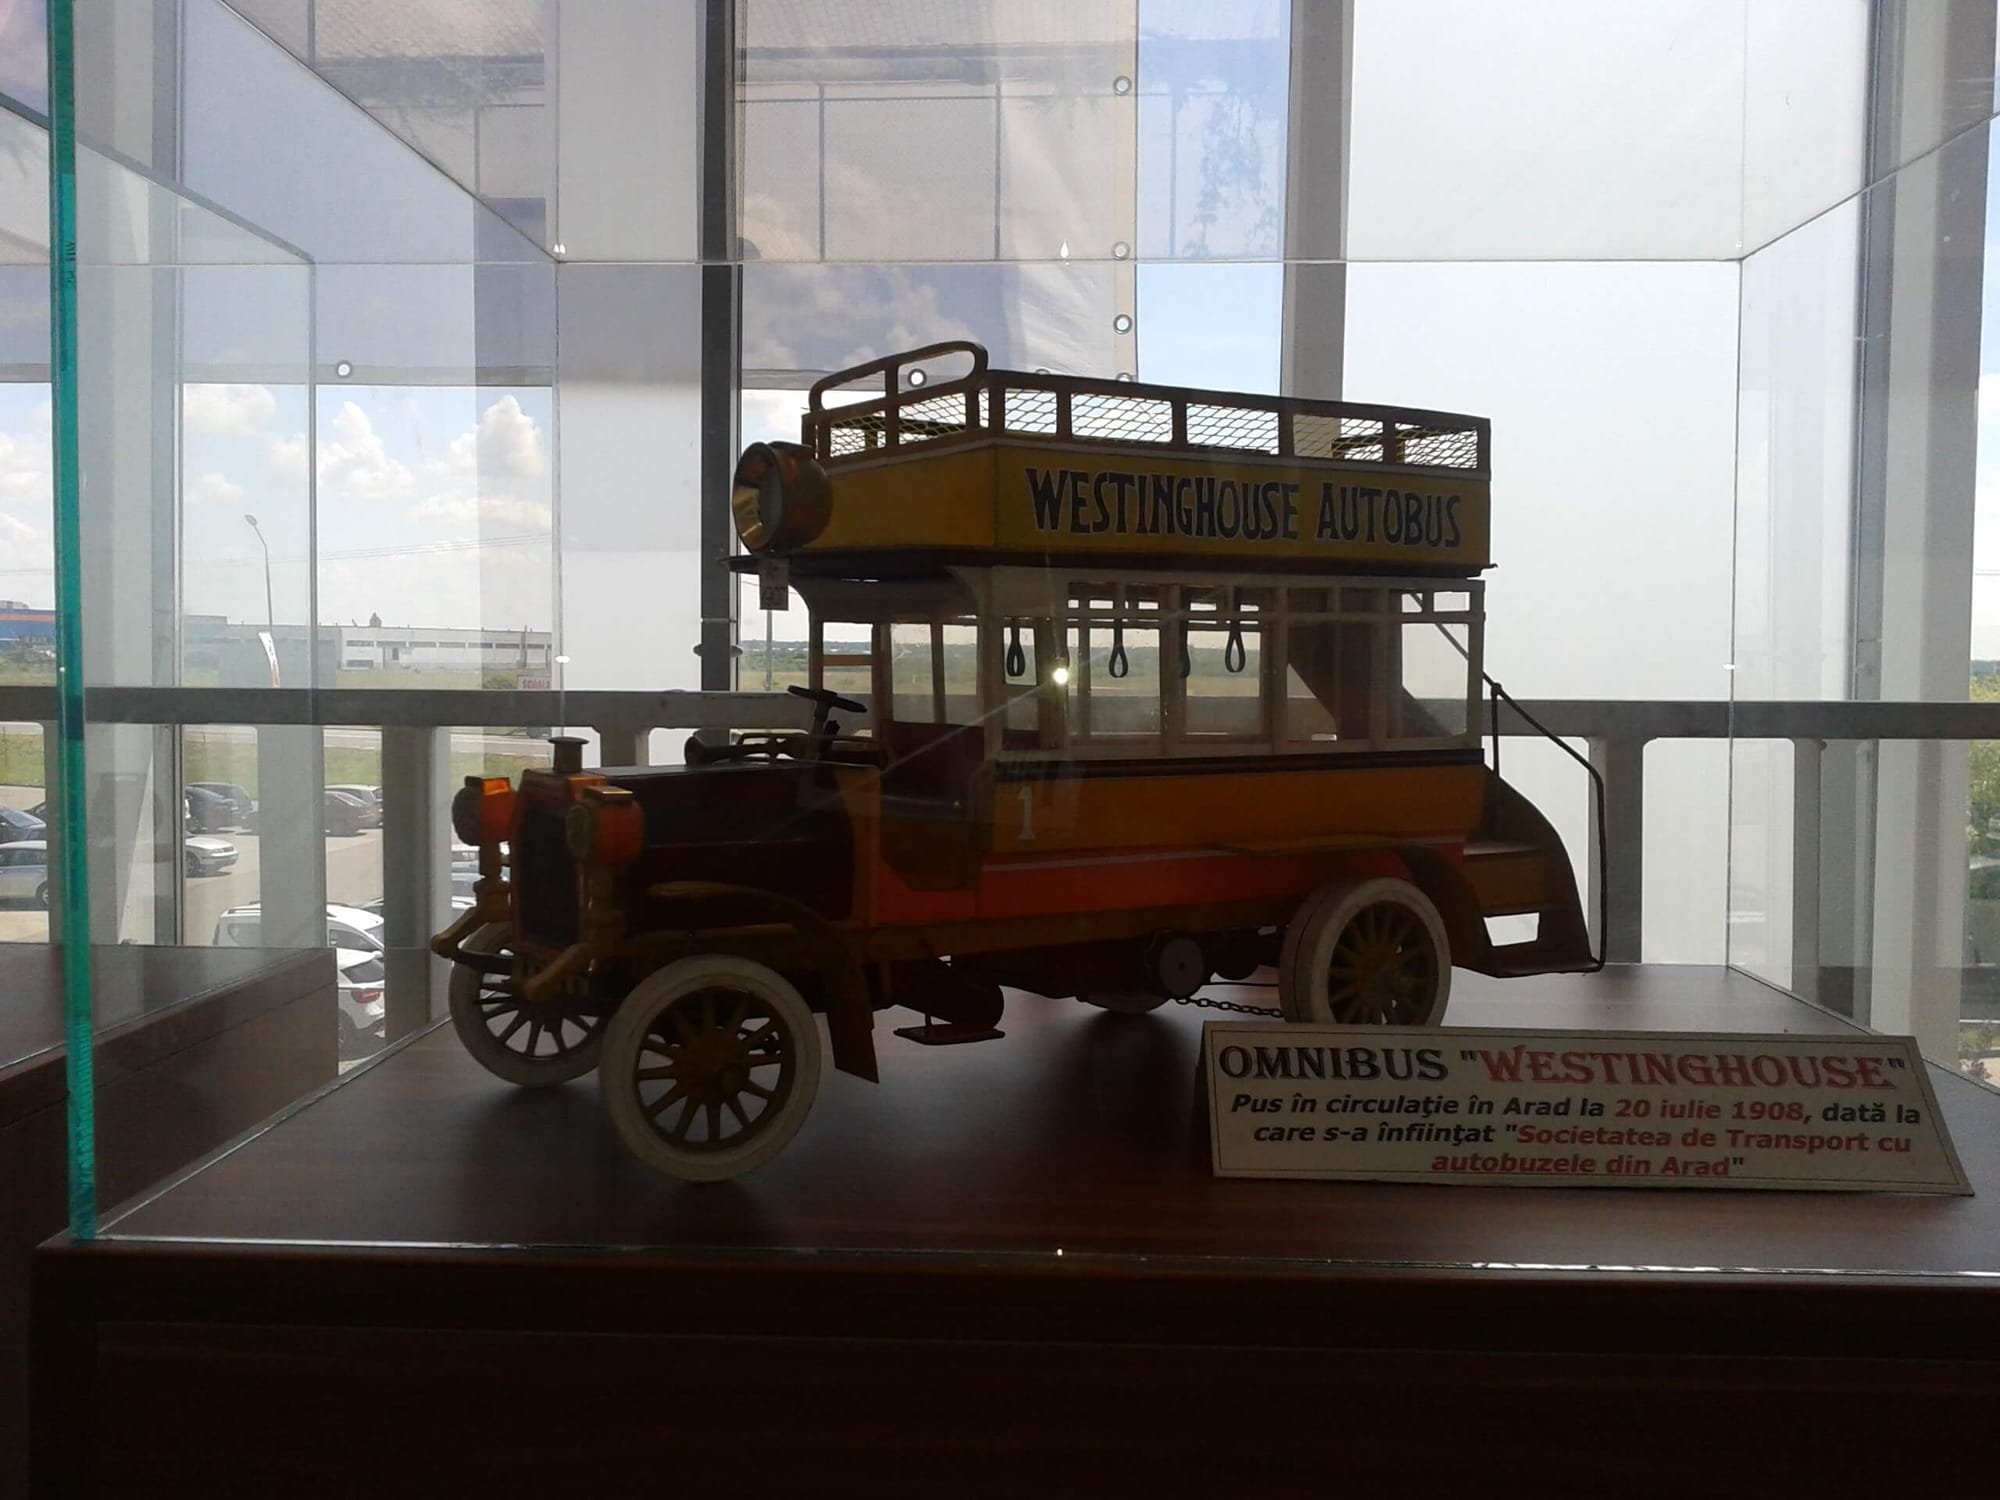 Westinghouse omnibusz az Aradi busz szállítási társaság tulajdonában (1908)